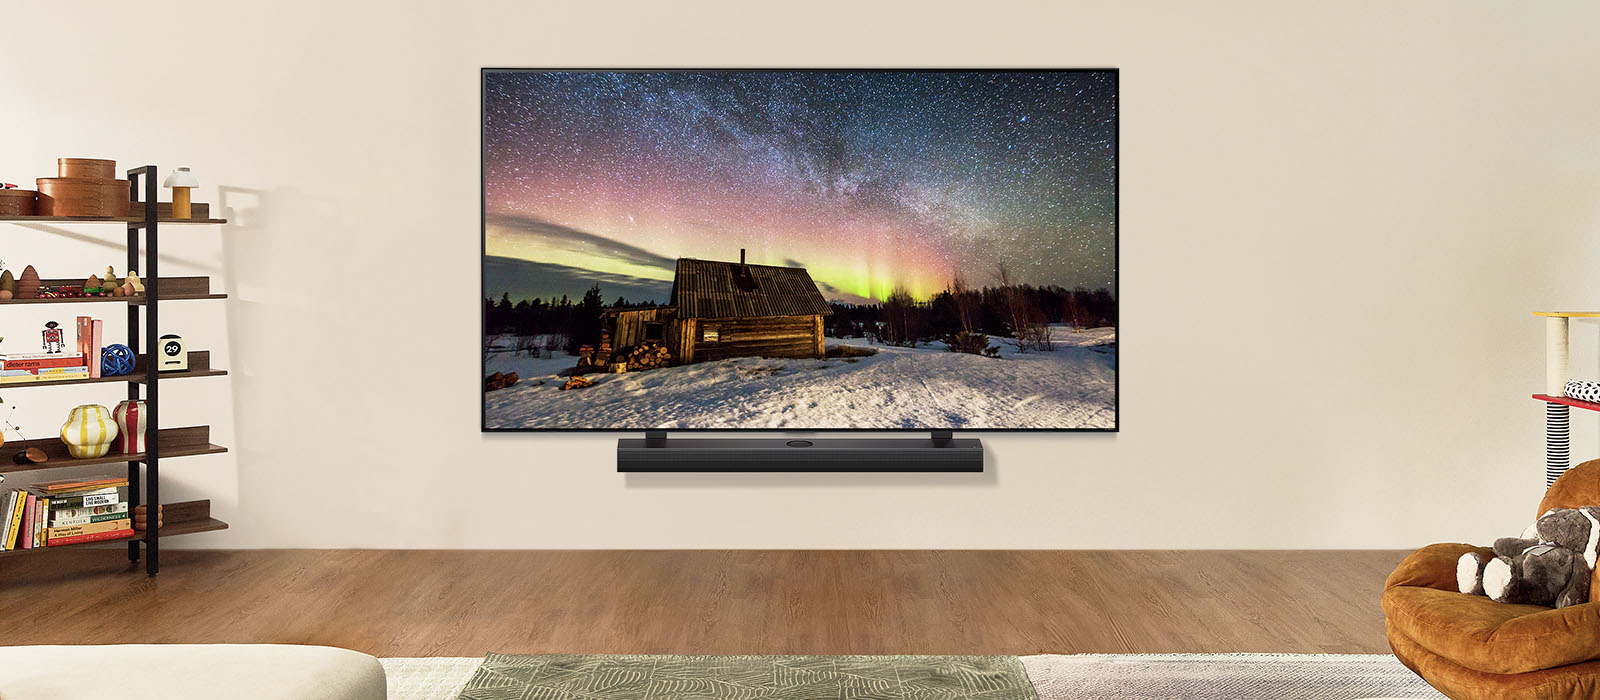 Televizor LG TV i kućno  LG Soundbar u modernom stambenom prostoru danju. Slika polarne svjetlosti na zaslonu prikazuje se s idealnom razinom osvjetljenja.